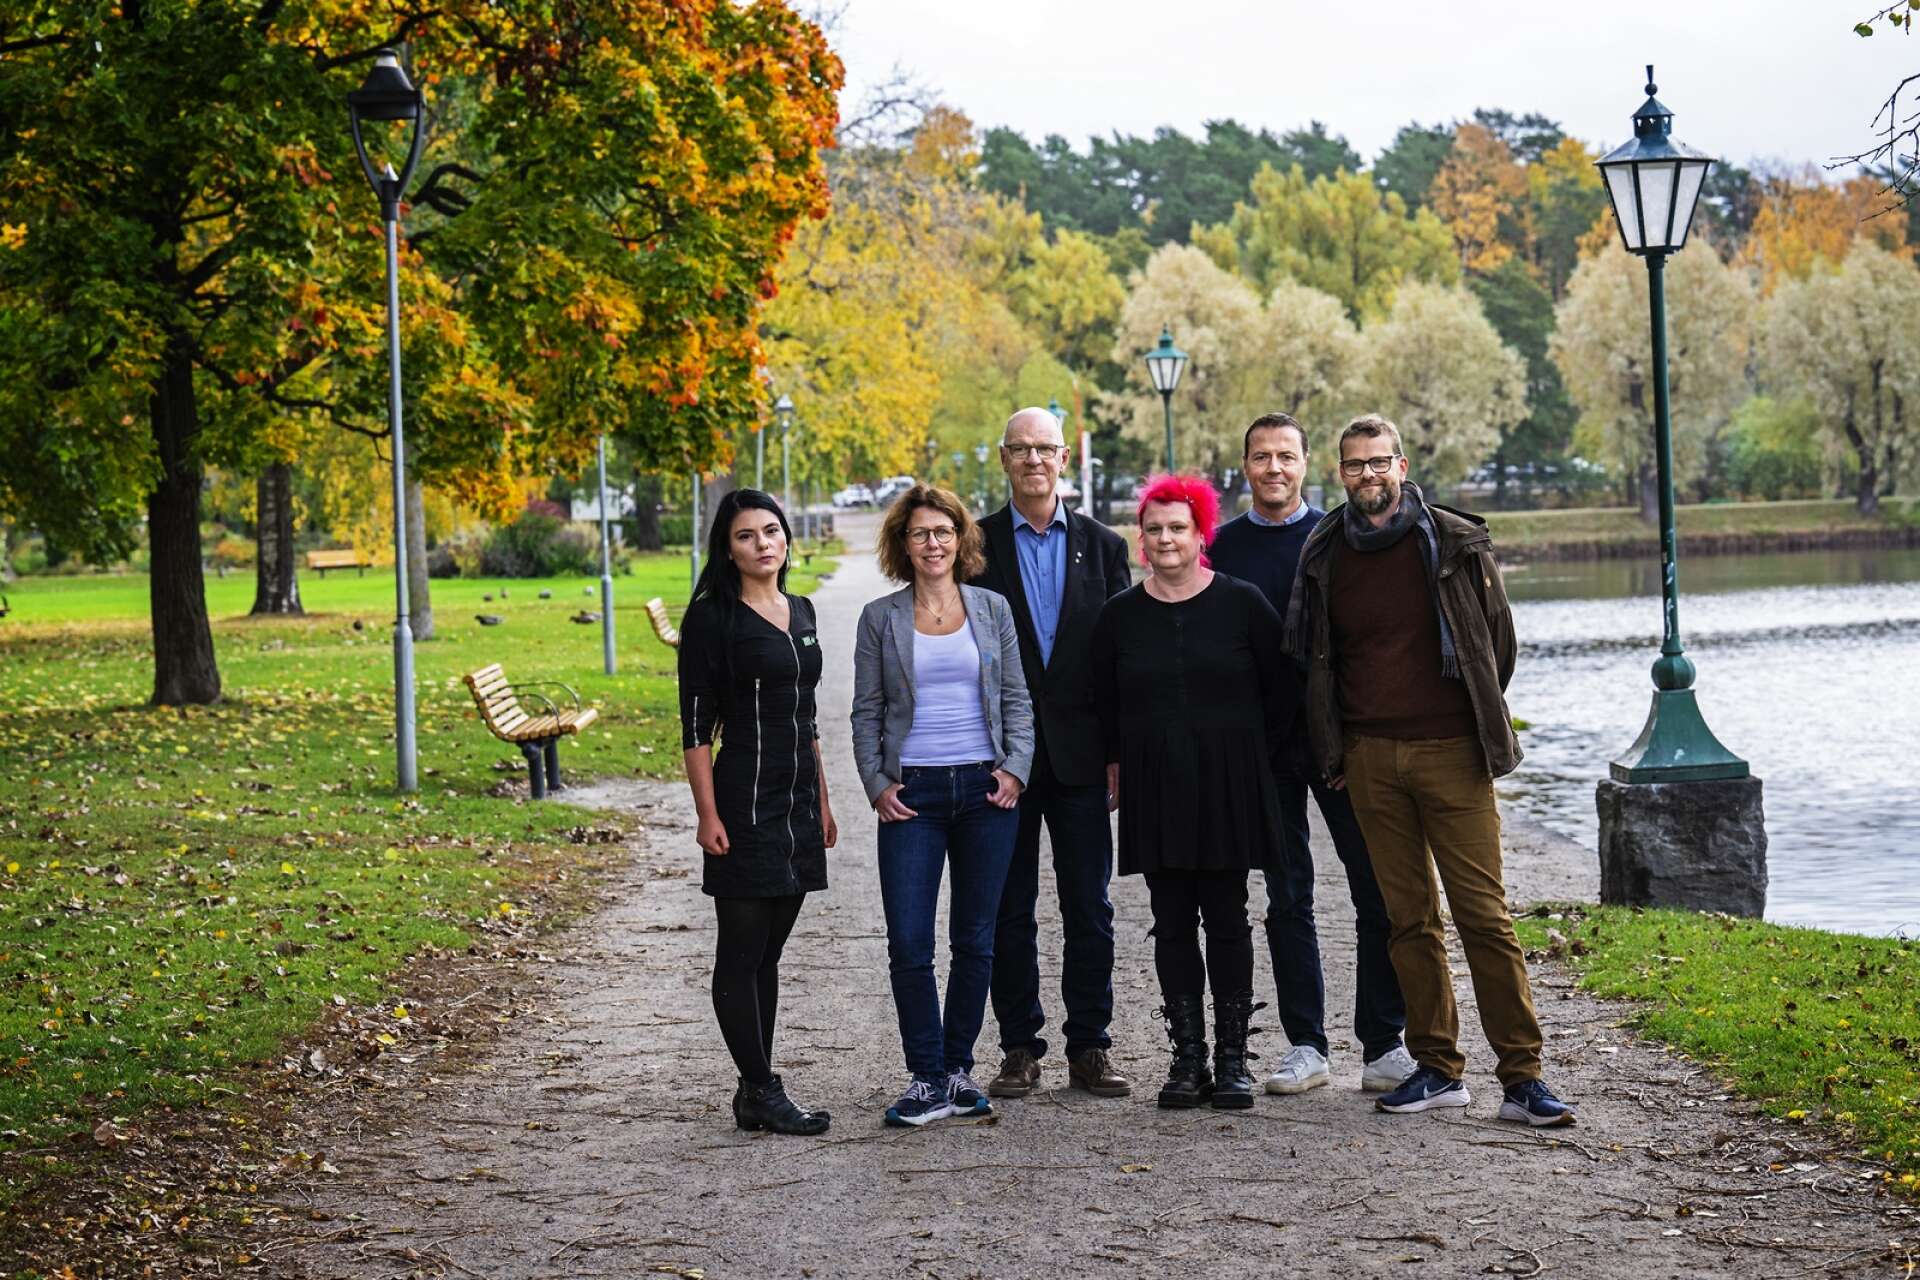 Arvikas nya fyrpartistyre: Alina Koltsova (MP), Mona Smedman (C) och Ulf Jonsson (C), Zara Hedelin (V), Peter Söderström (S) och Kenneth Johannesson (S).